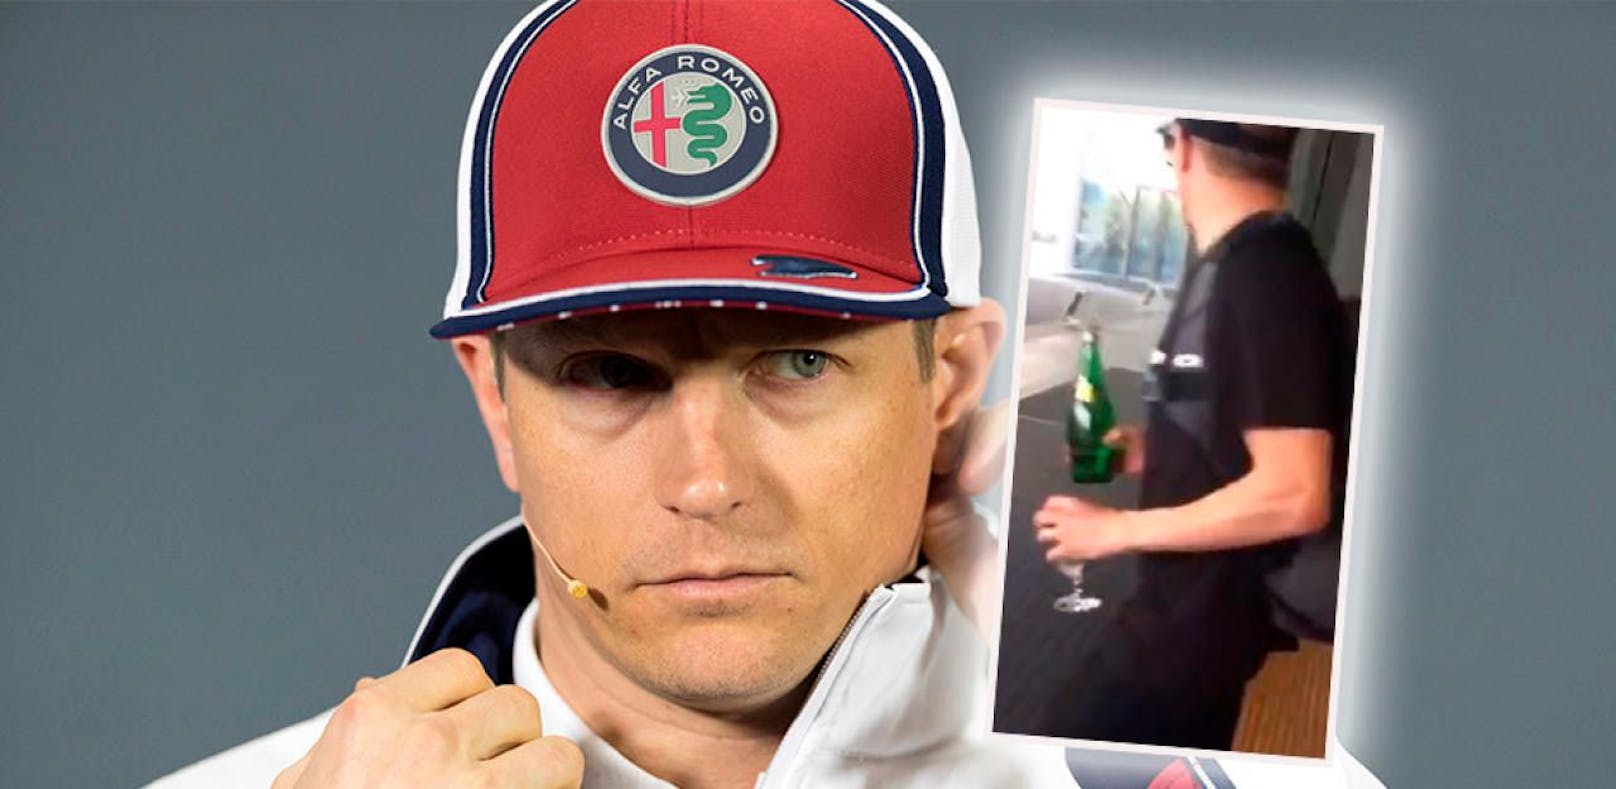 F1-Star Räikkönen torkelt angetrunken aus Hotel